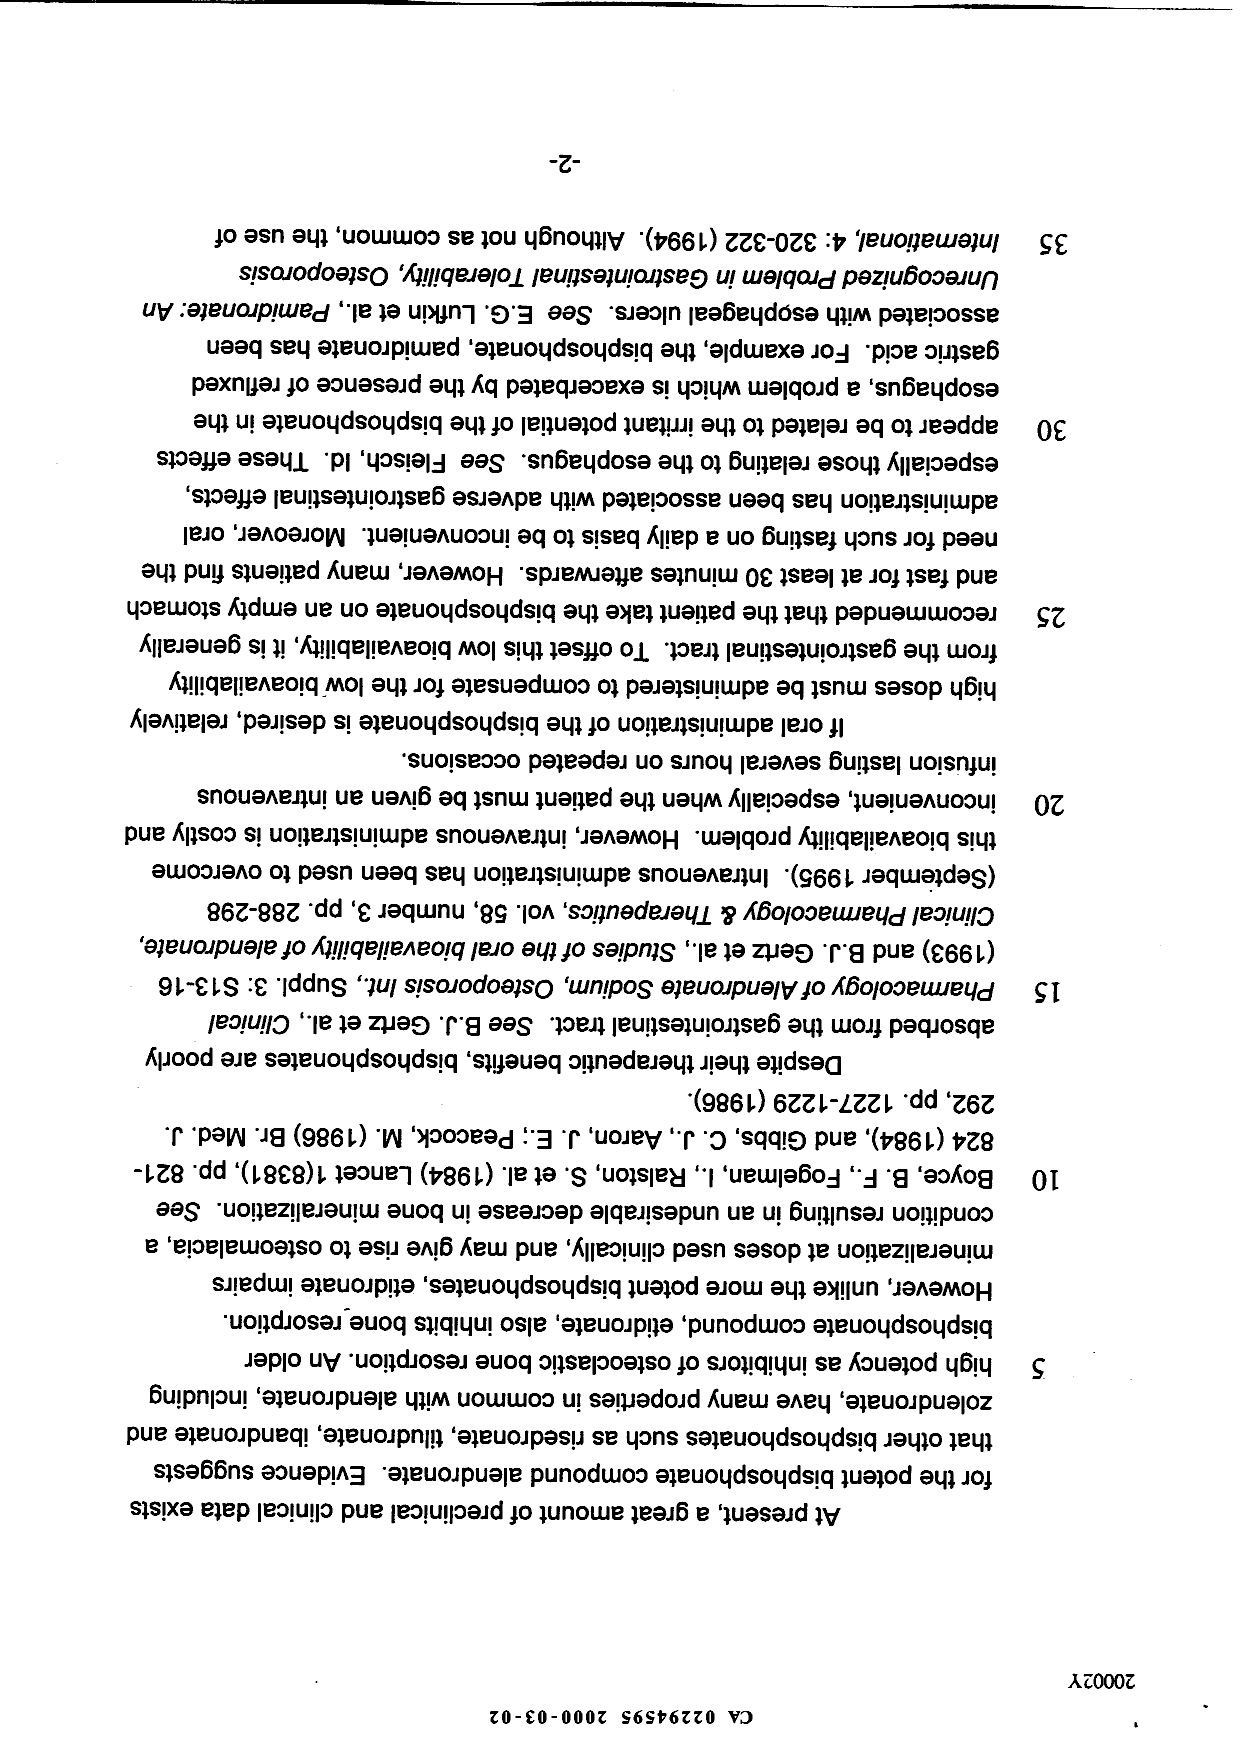 Canadian Patent Document 2294595. Description 19991202. Image 2 of 32